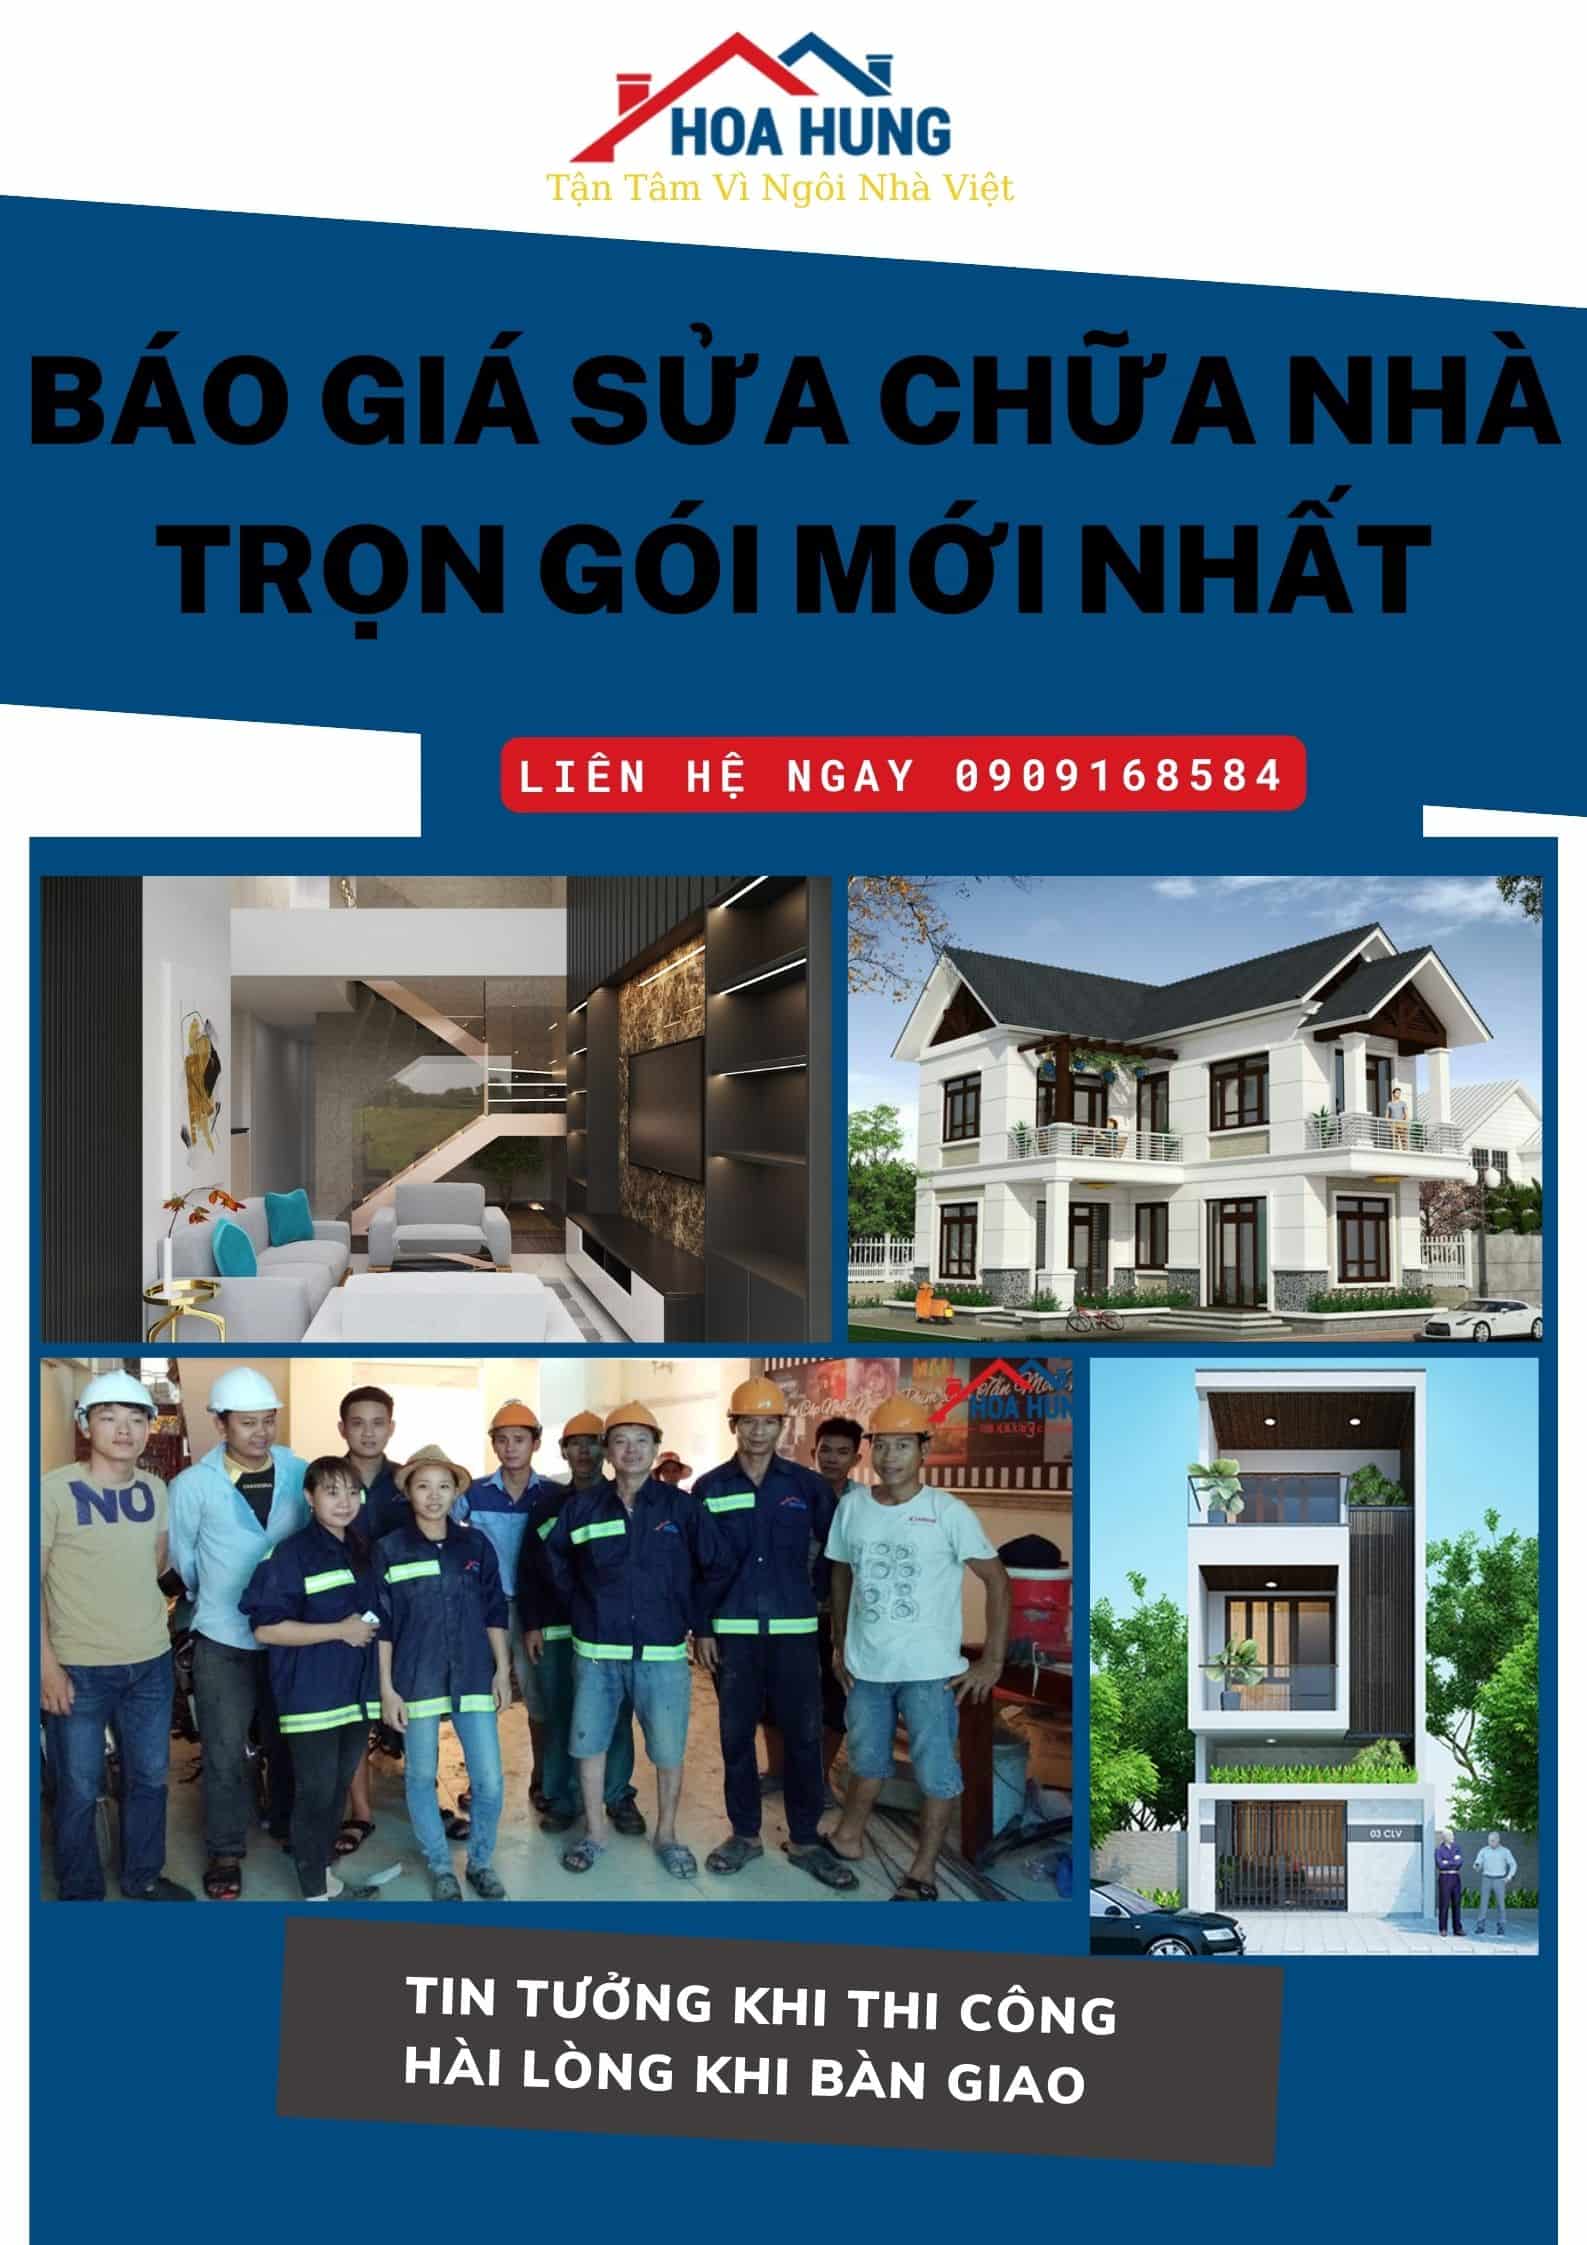 Sửa chữa nhà ở Tân Phú – Dịch vụ sửa chữa nhà uy tín TP.HCM